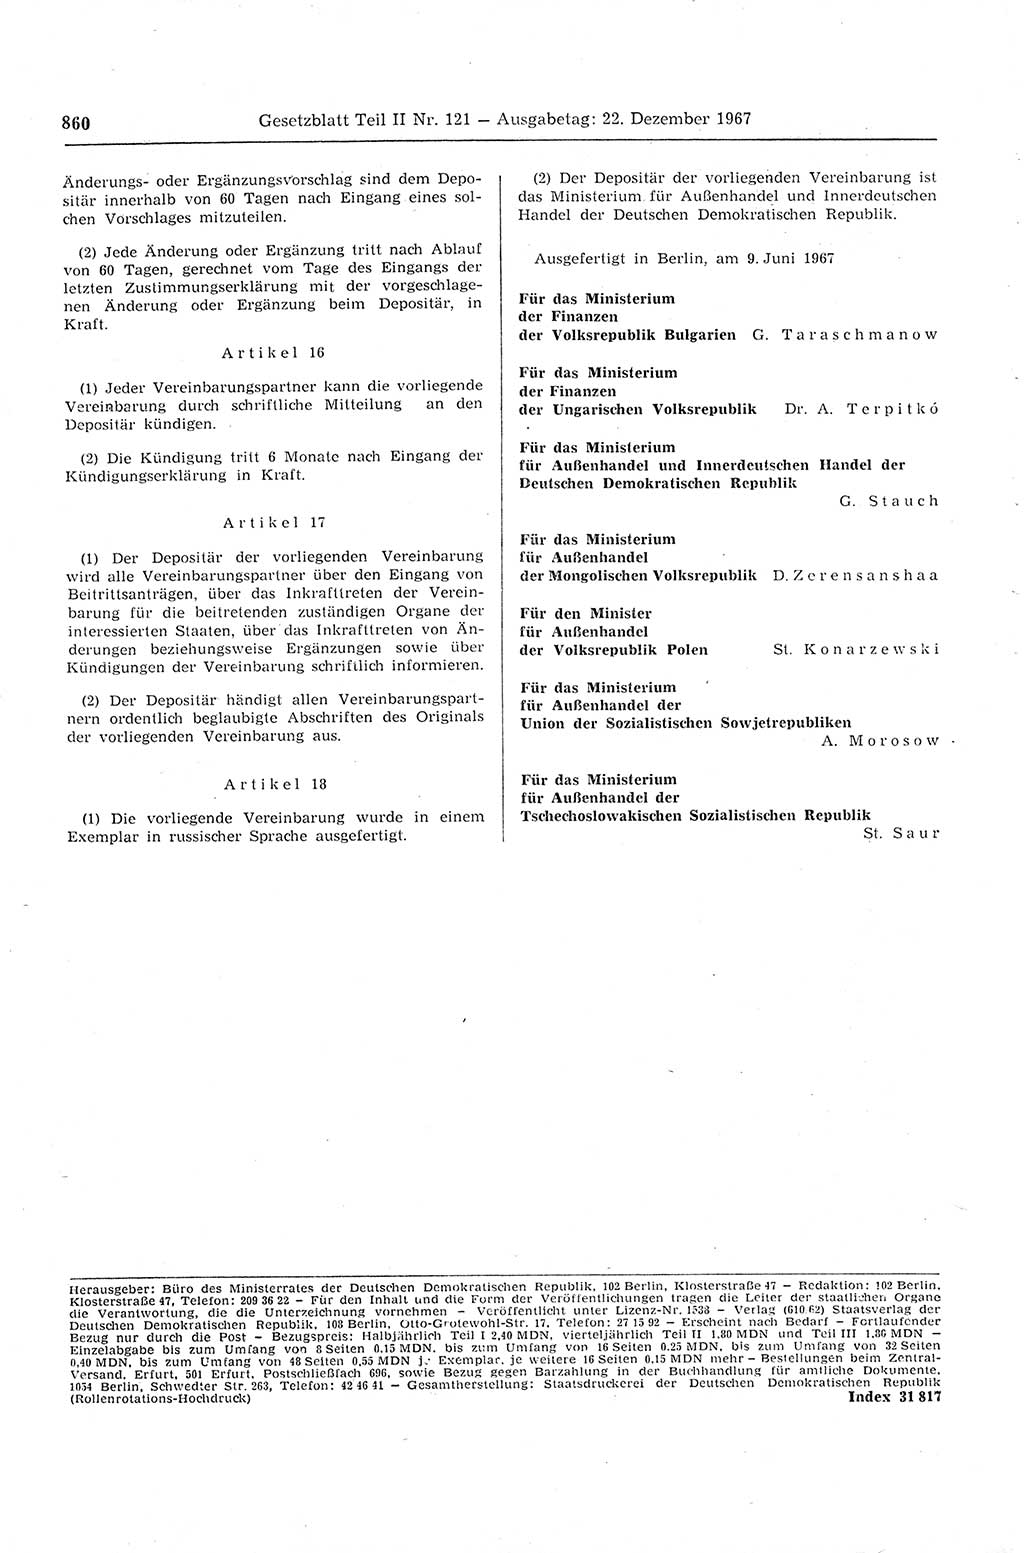 Gesetzblatt (GBl.) der Deutschen Demokratischen Republik (DDR) Teil ⅠⅠ 1967, Seite 860 (GBl. DDR ⅠⅠ 1967, S. 860)